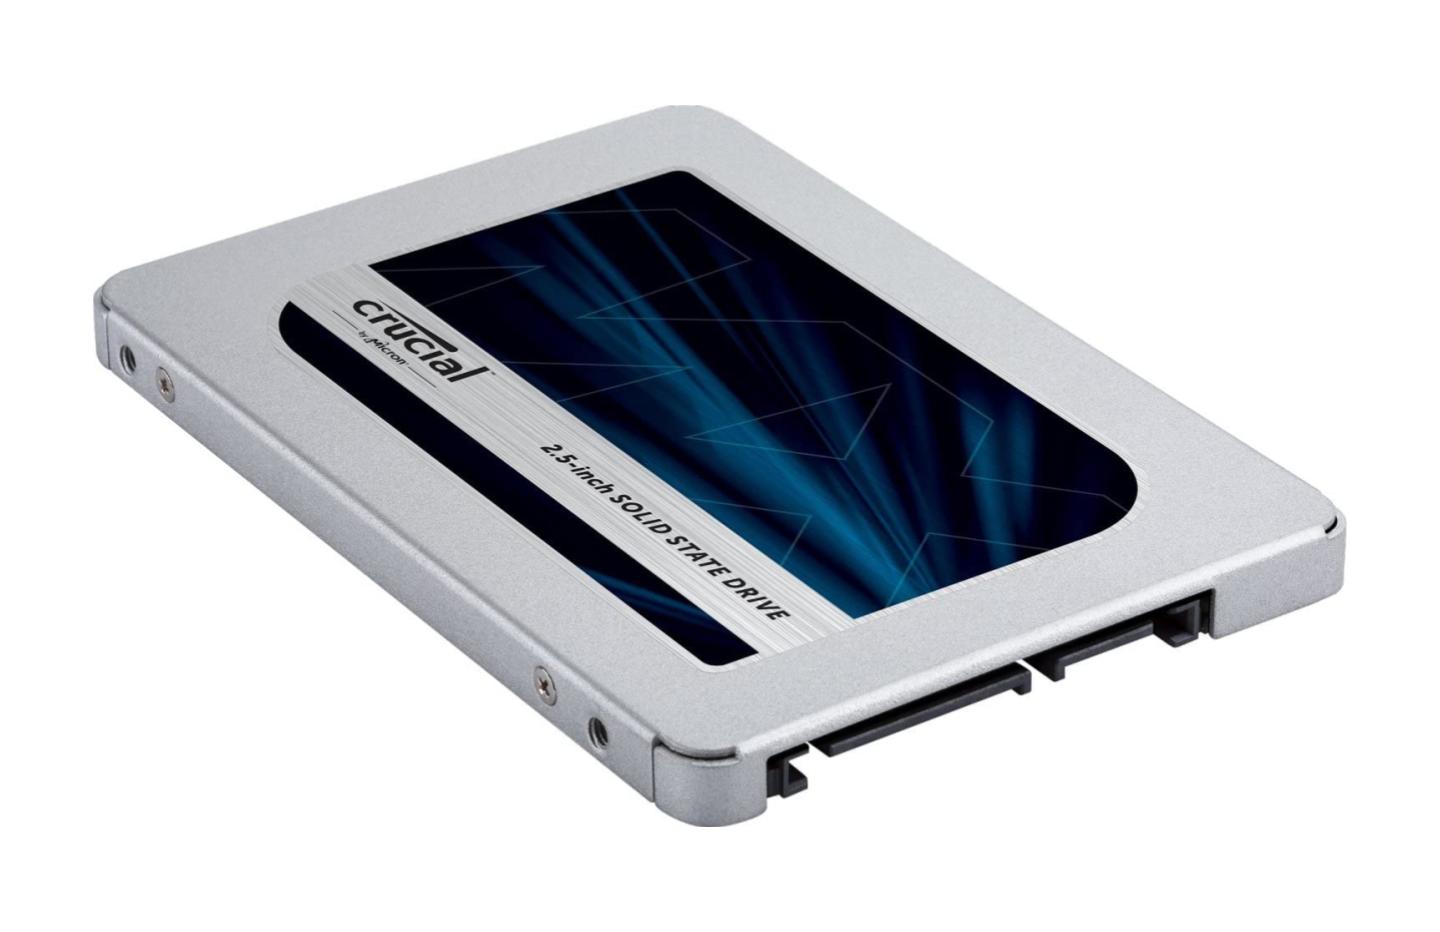 Le SSD Crucial 4 To atteint son prix le plus bas grâce aux Soldes